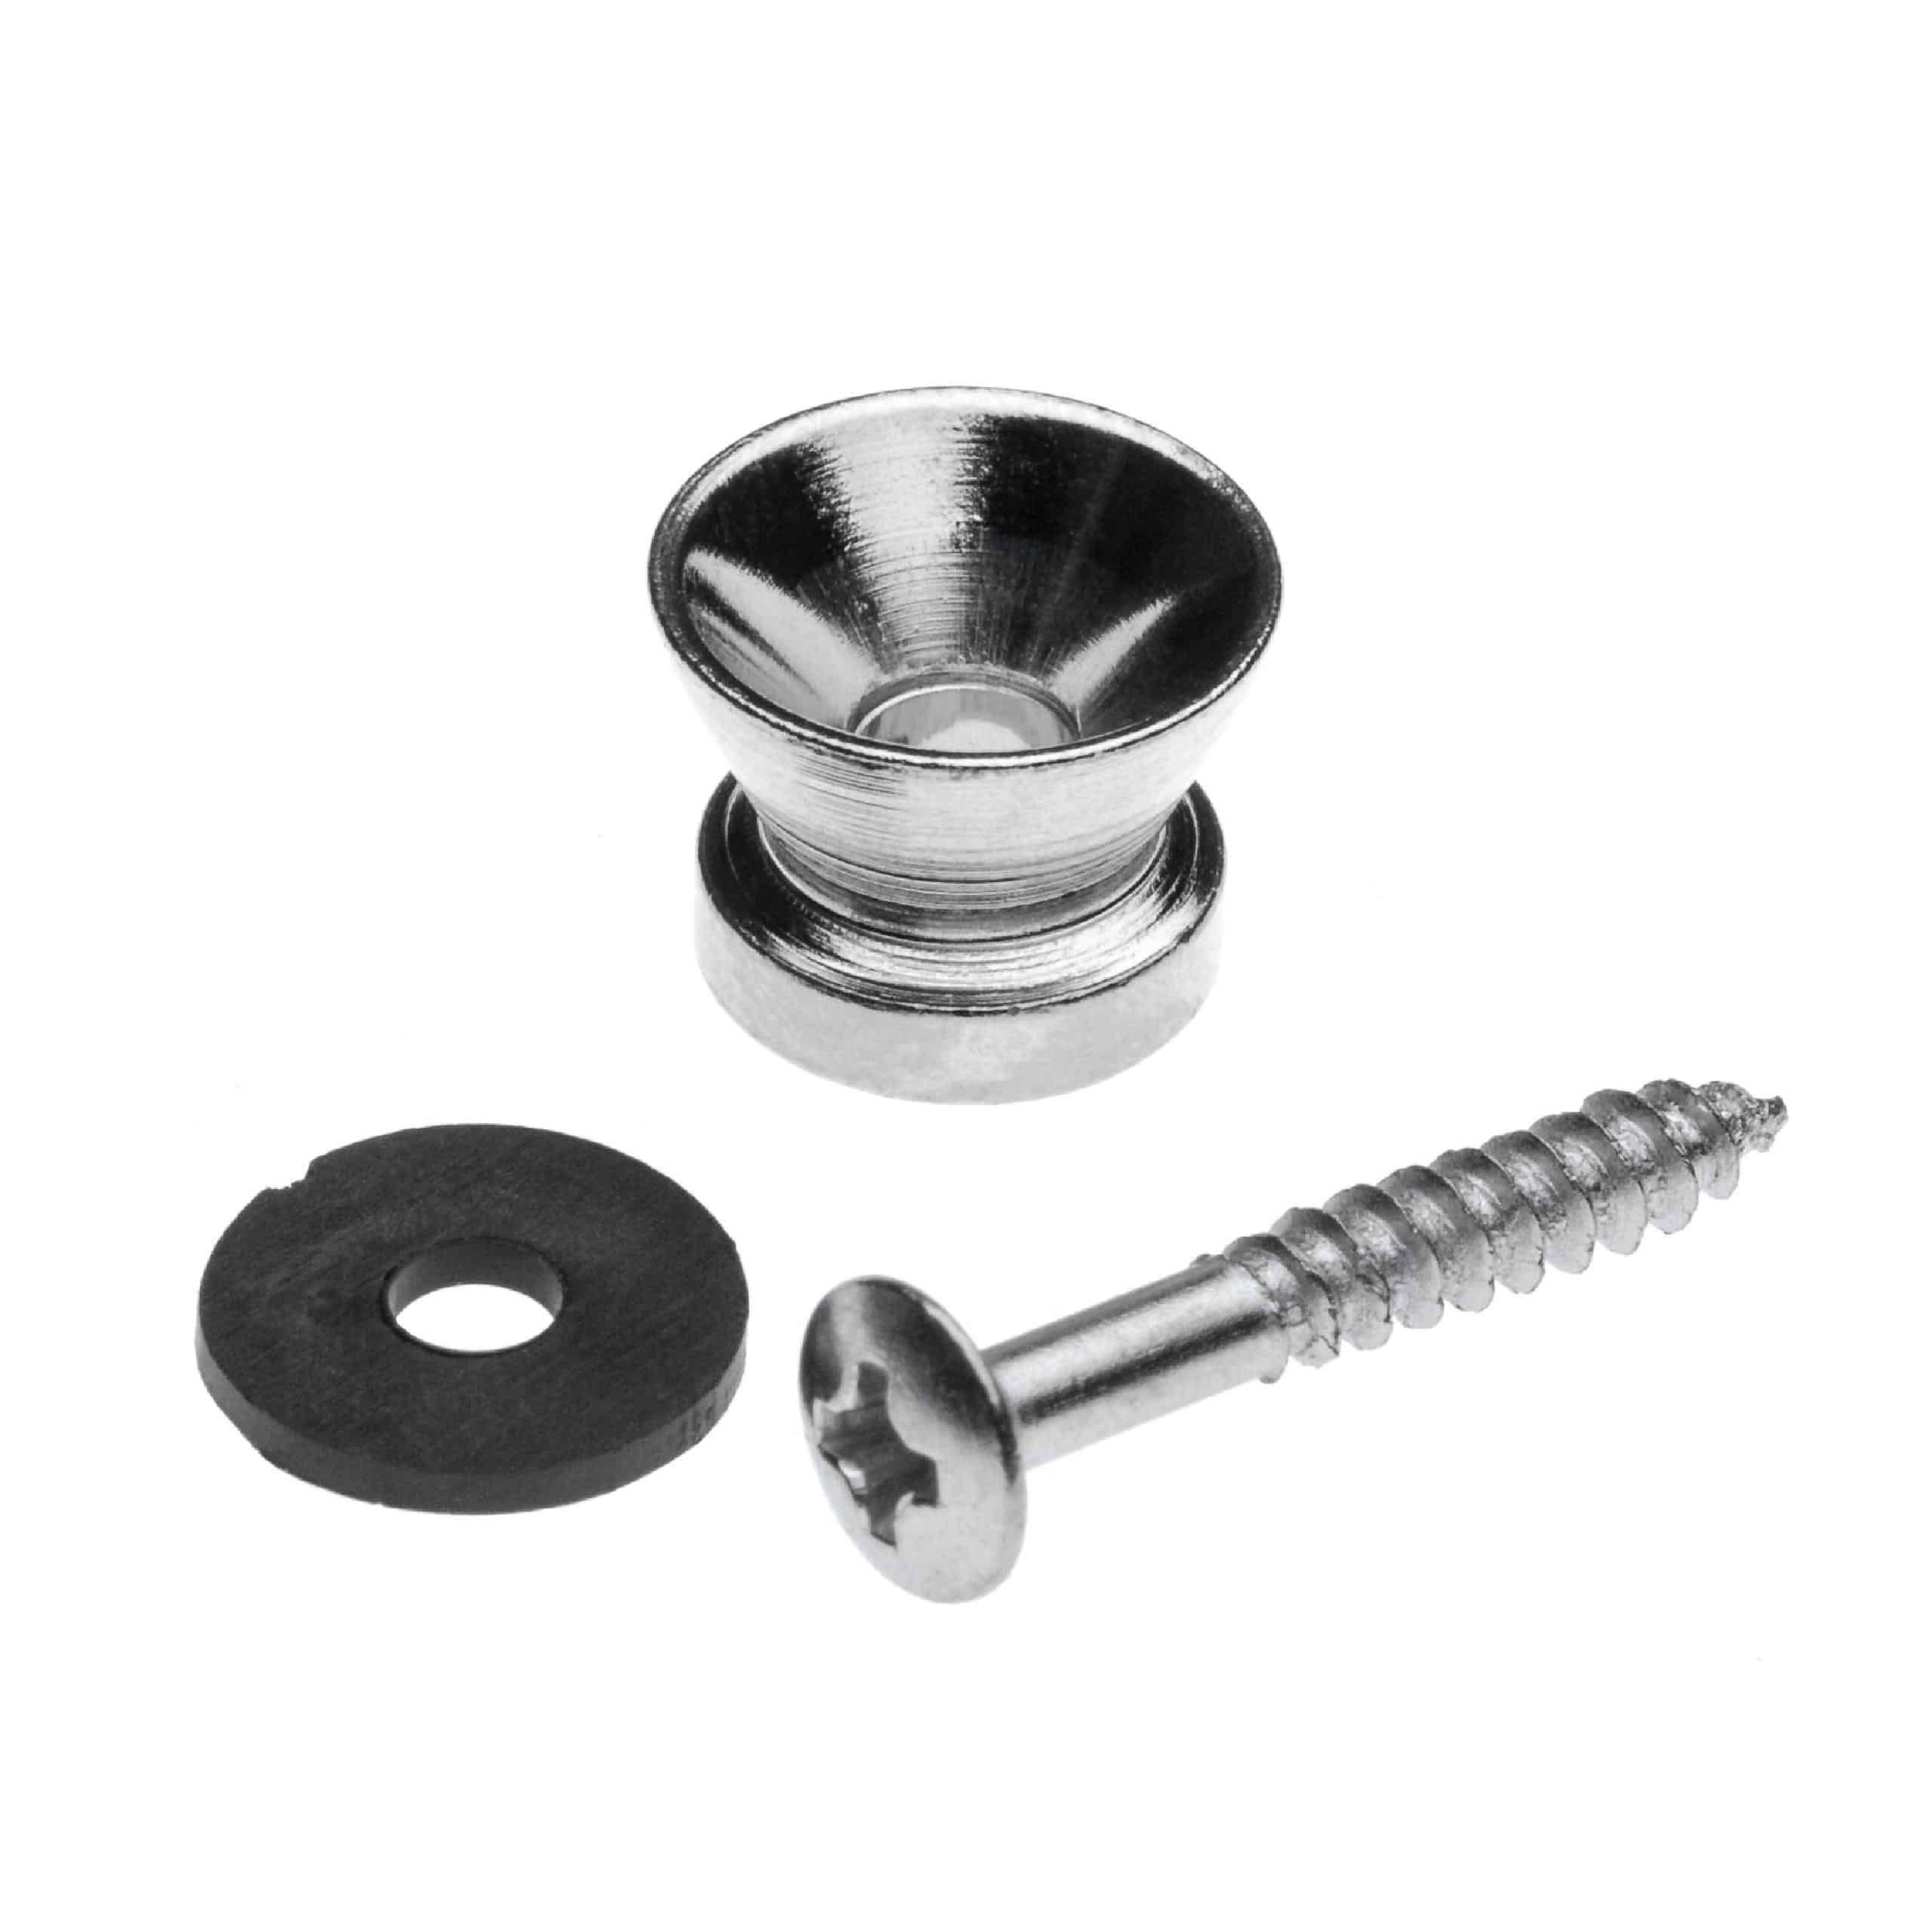  Security Strap Lock Straplock Button Pin Peg for Ukulele or Mandolin; silver, V-shape V 